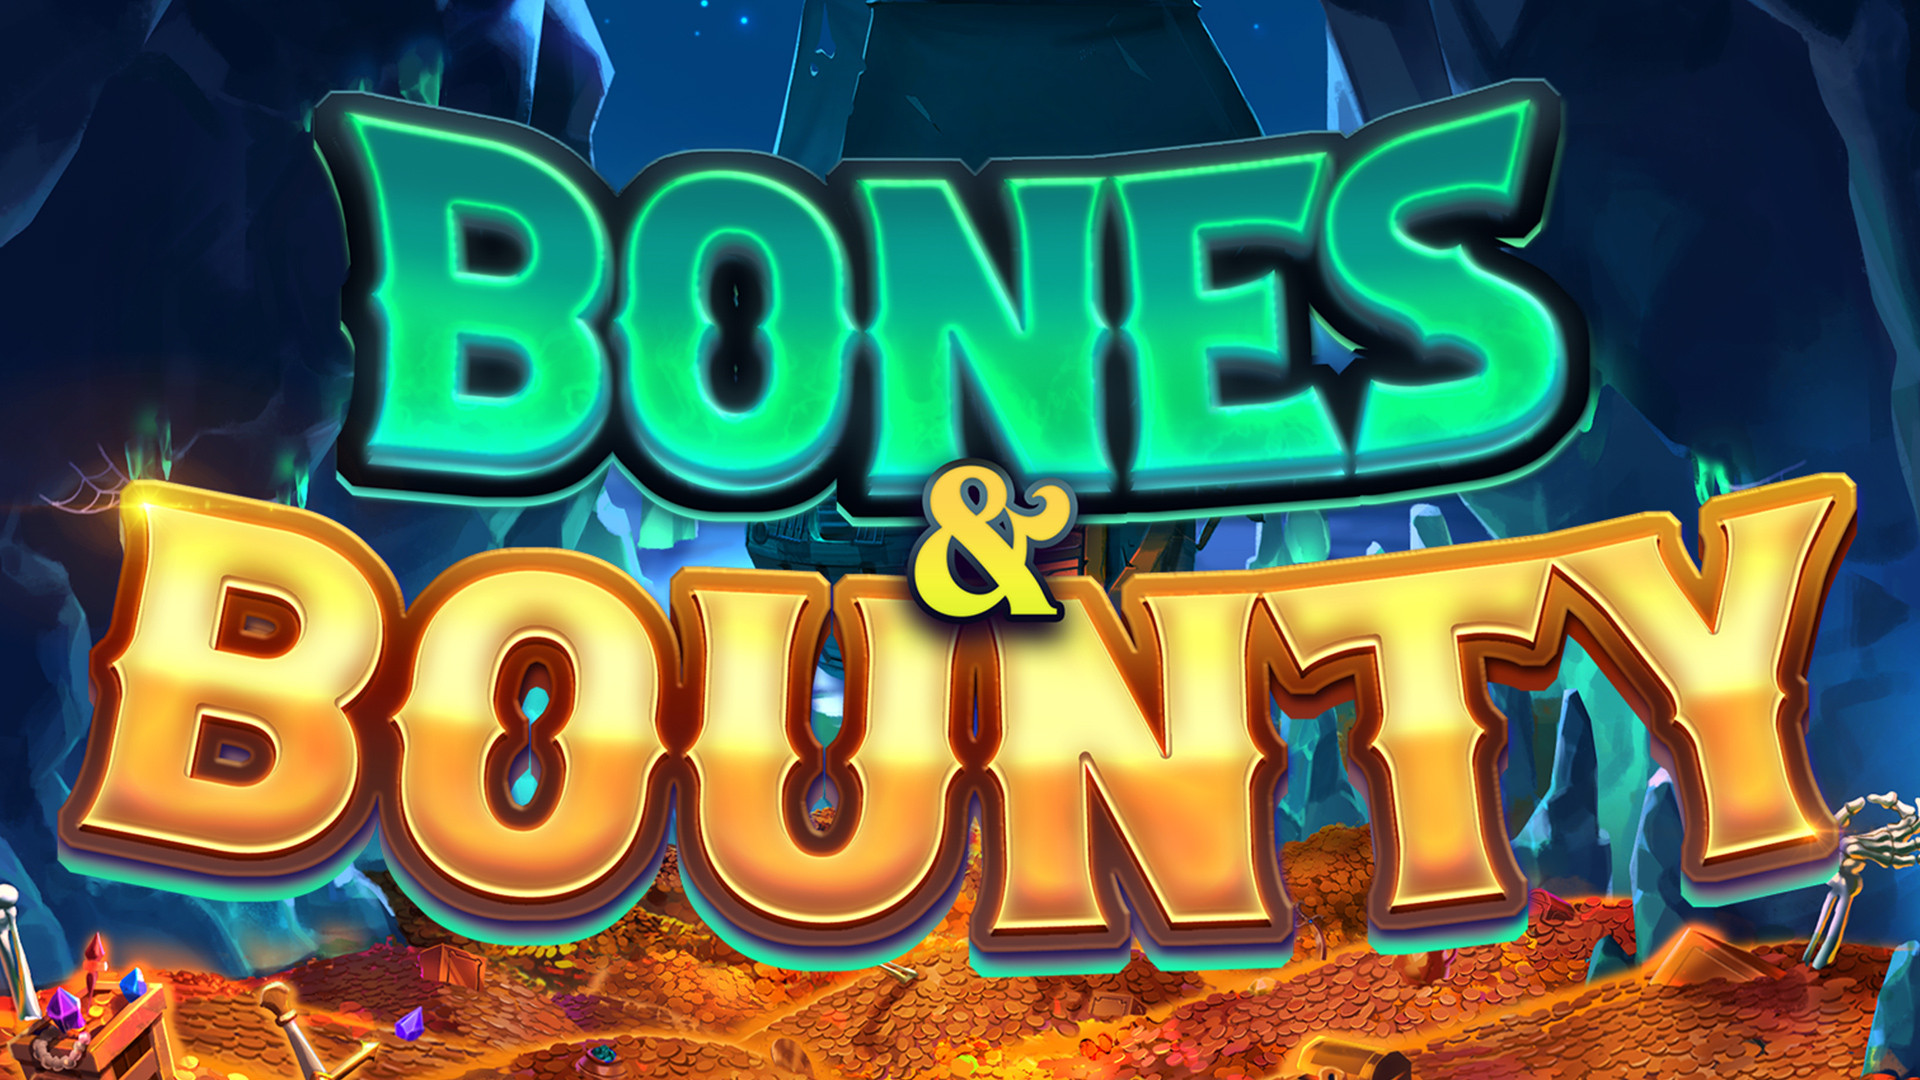 Bones and Bounty